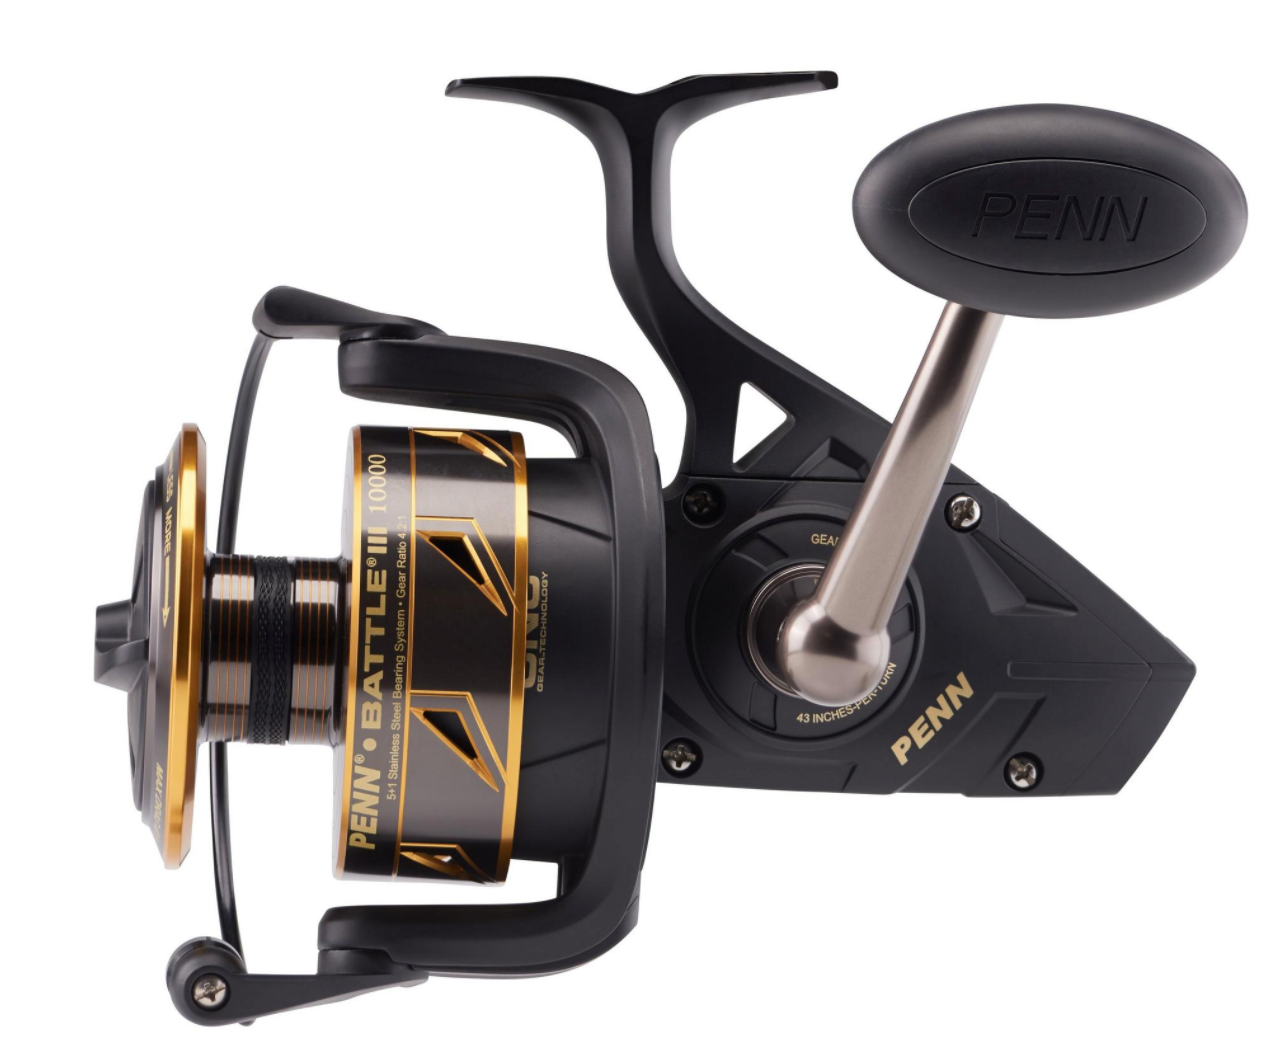 NEW Penn BATTLE III 10000 Spin Fishing Reel + Warranty 2020 Model